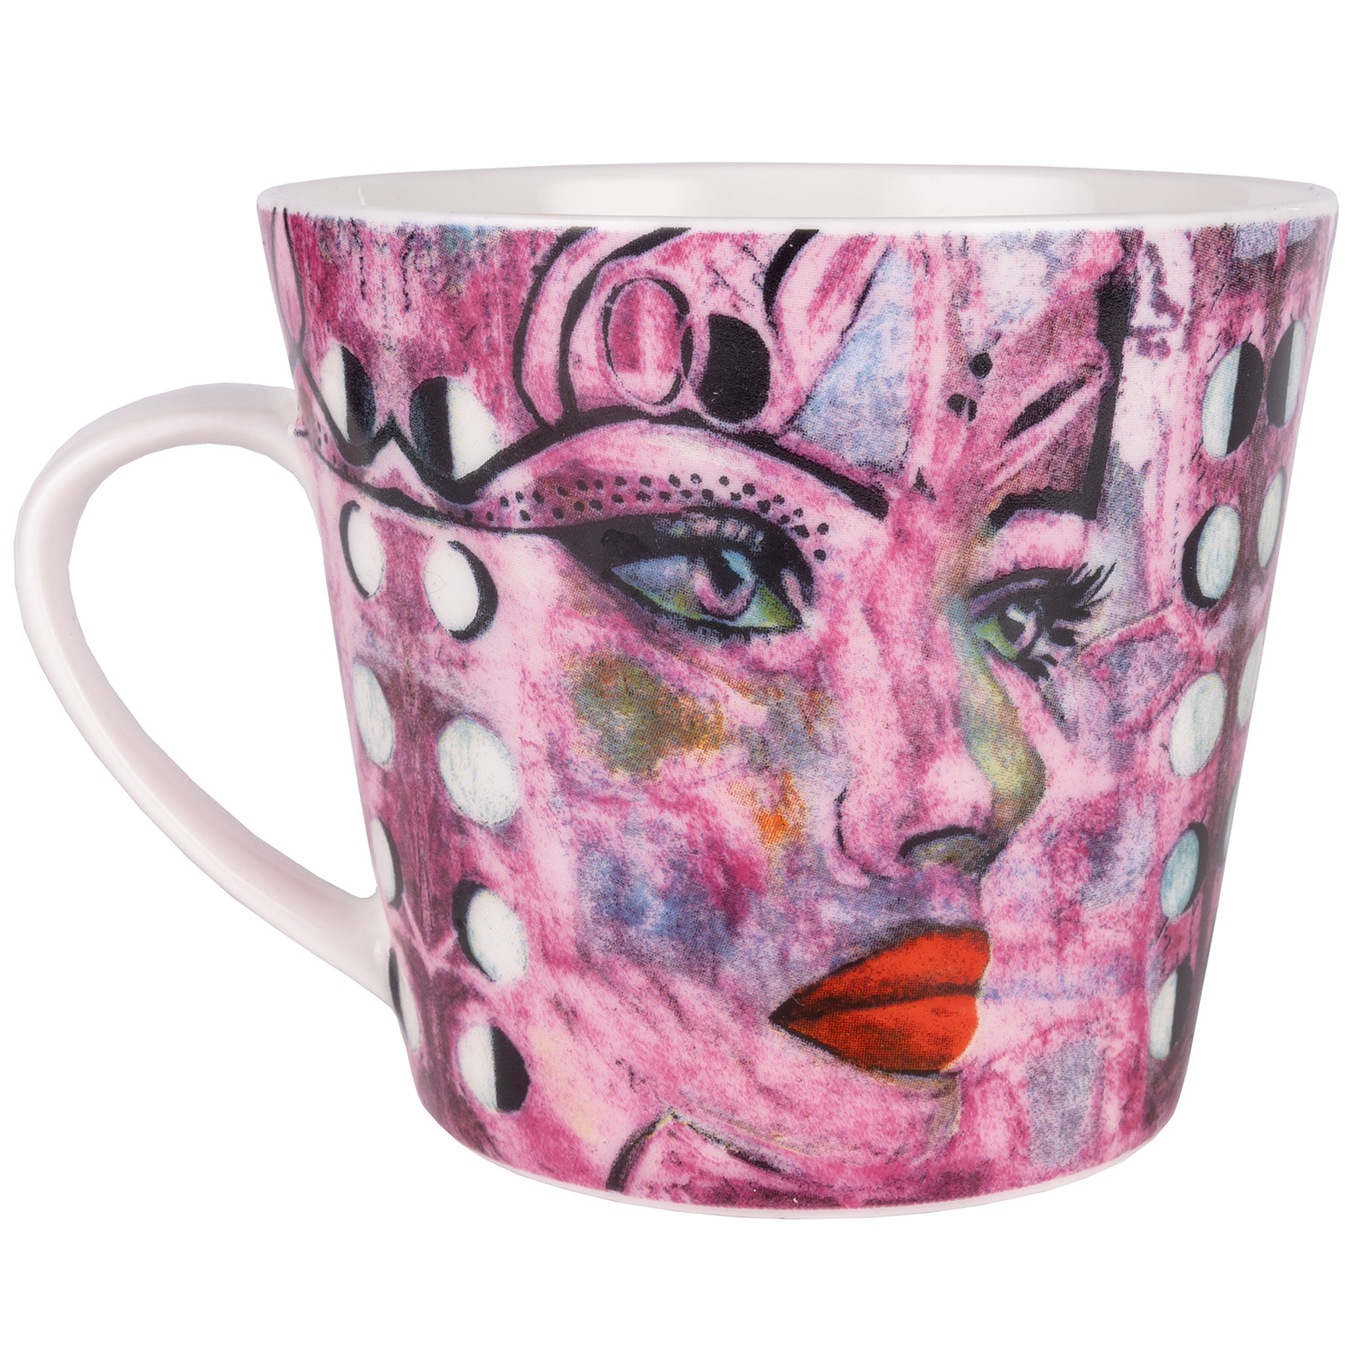 Moonlight Queen Mug 40 cl, Pink